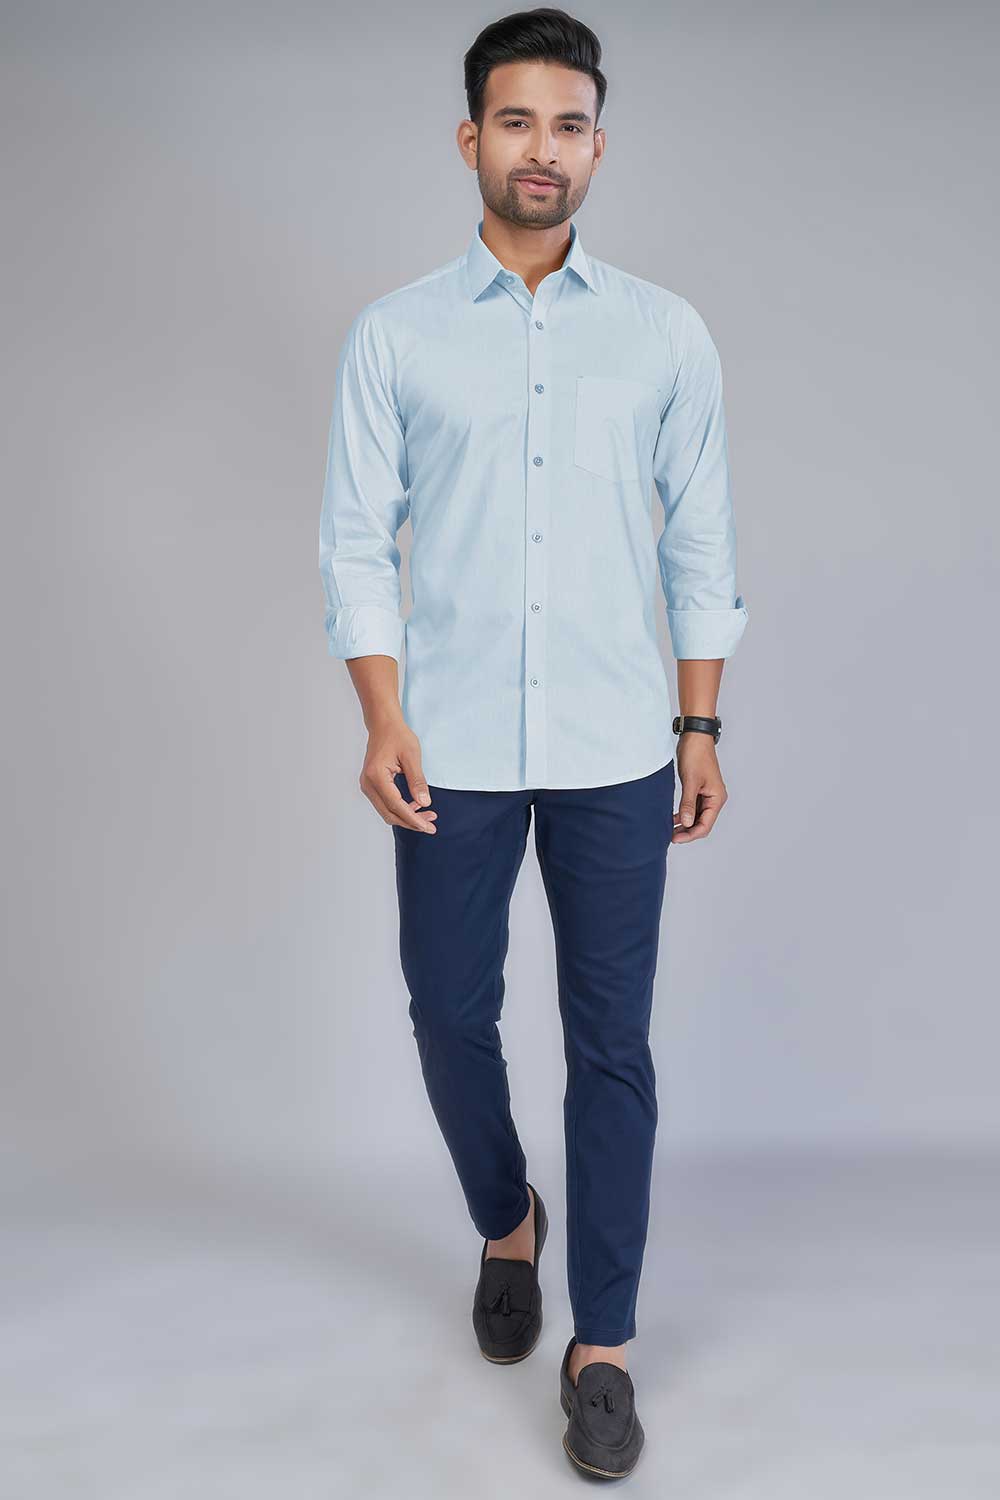 light blue Oxford shirt